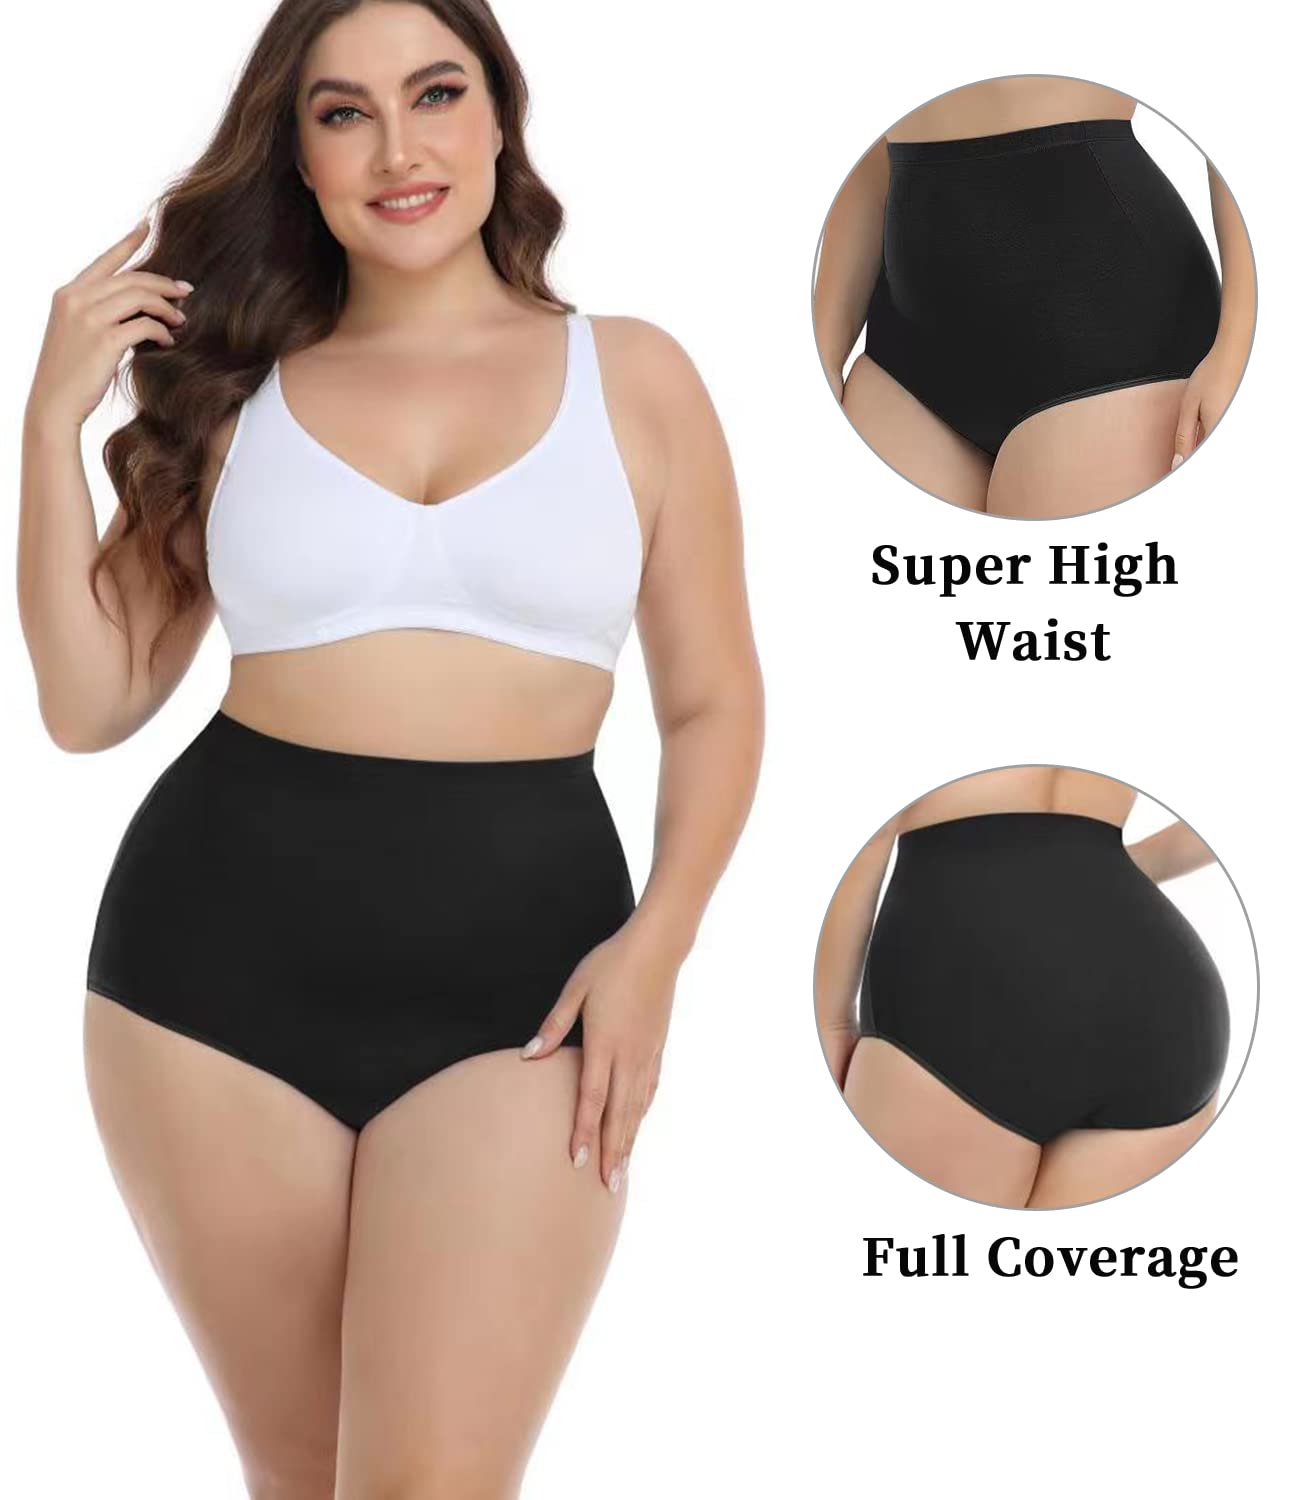 wirarpa Women's Underwear High Waist Briefs Ladies Plus Size